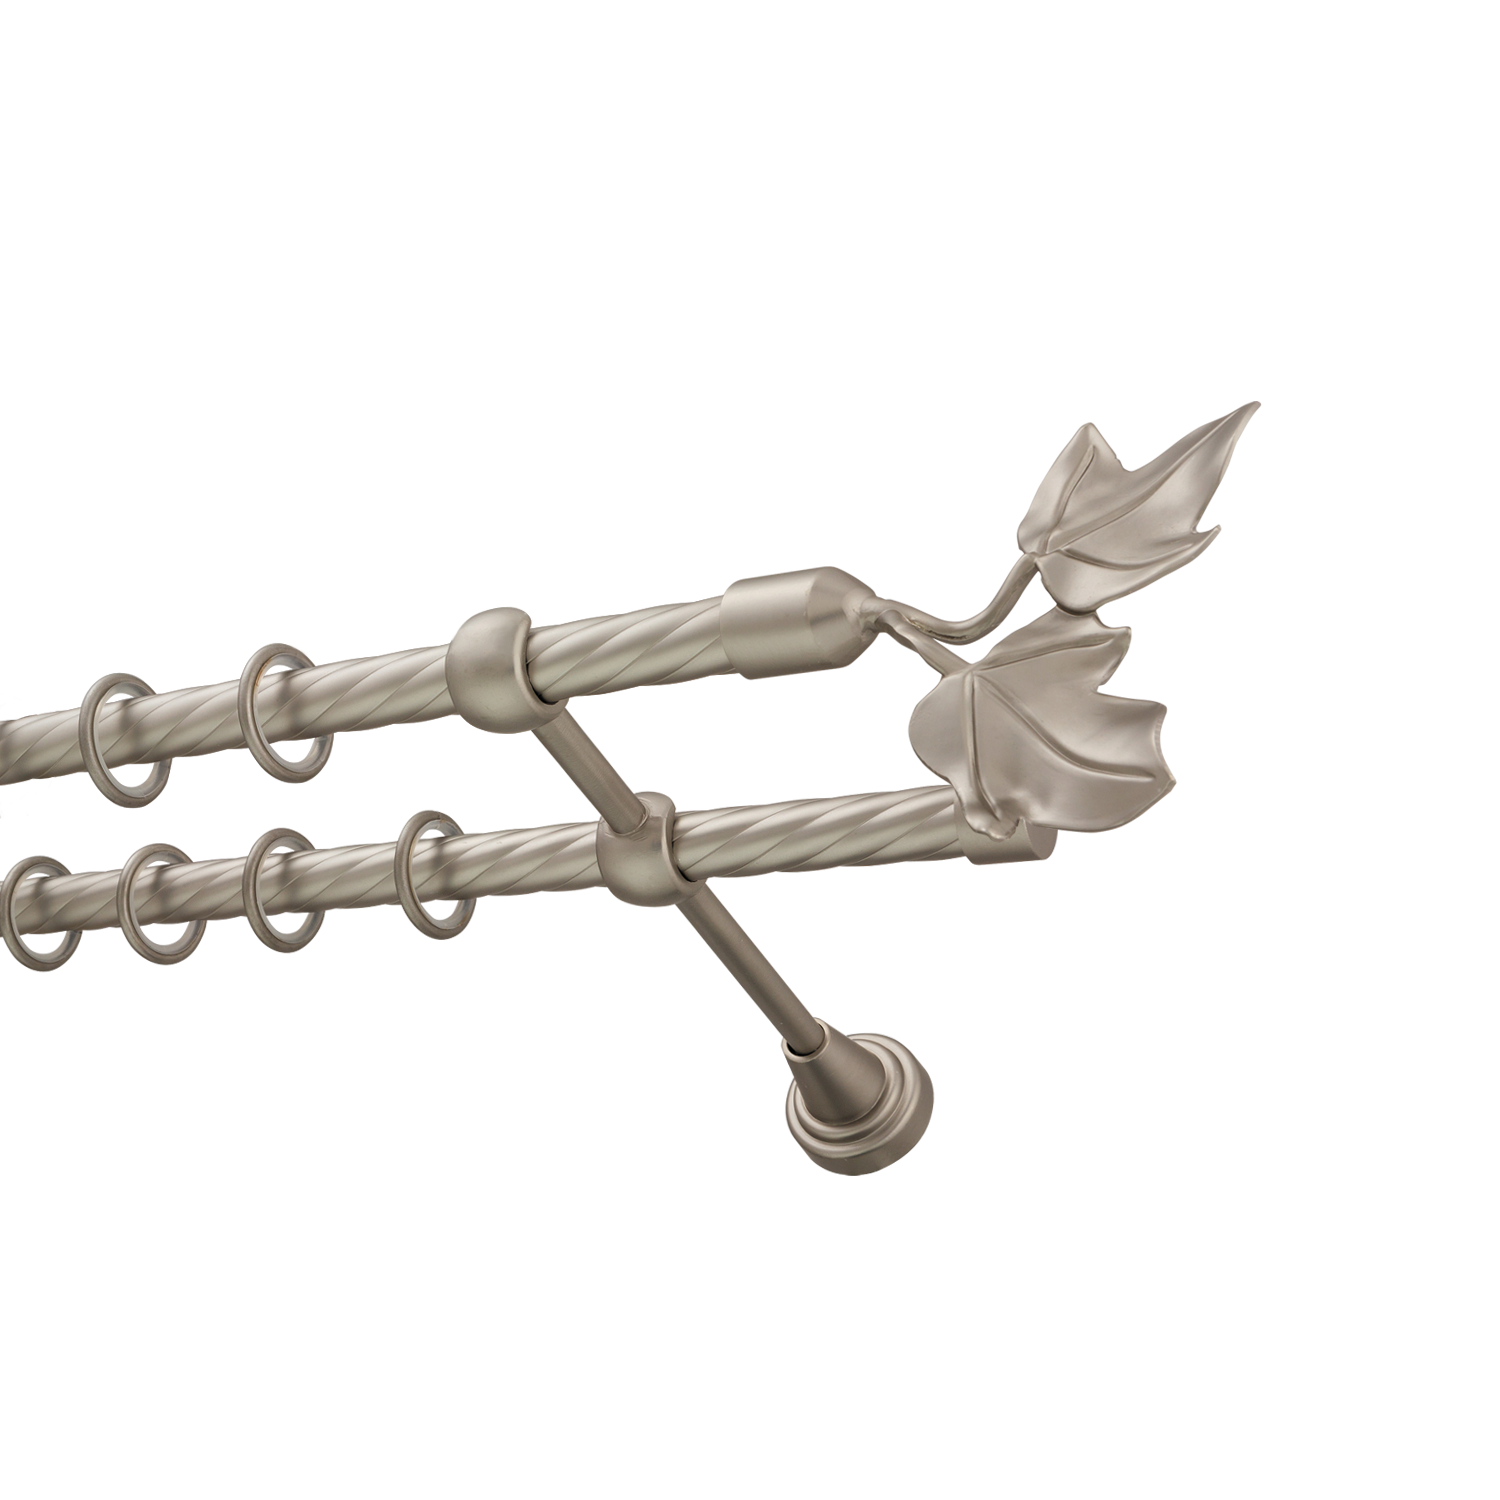 Металлический карниз для штор Листья, двухрядный 16/16 мм, сталь, витая штанга, длина 140 см - фото Wikidecor.ru